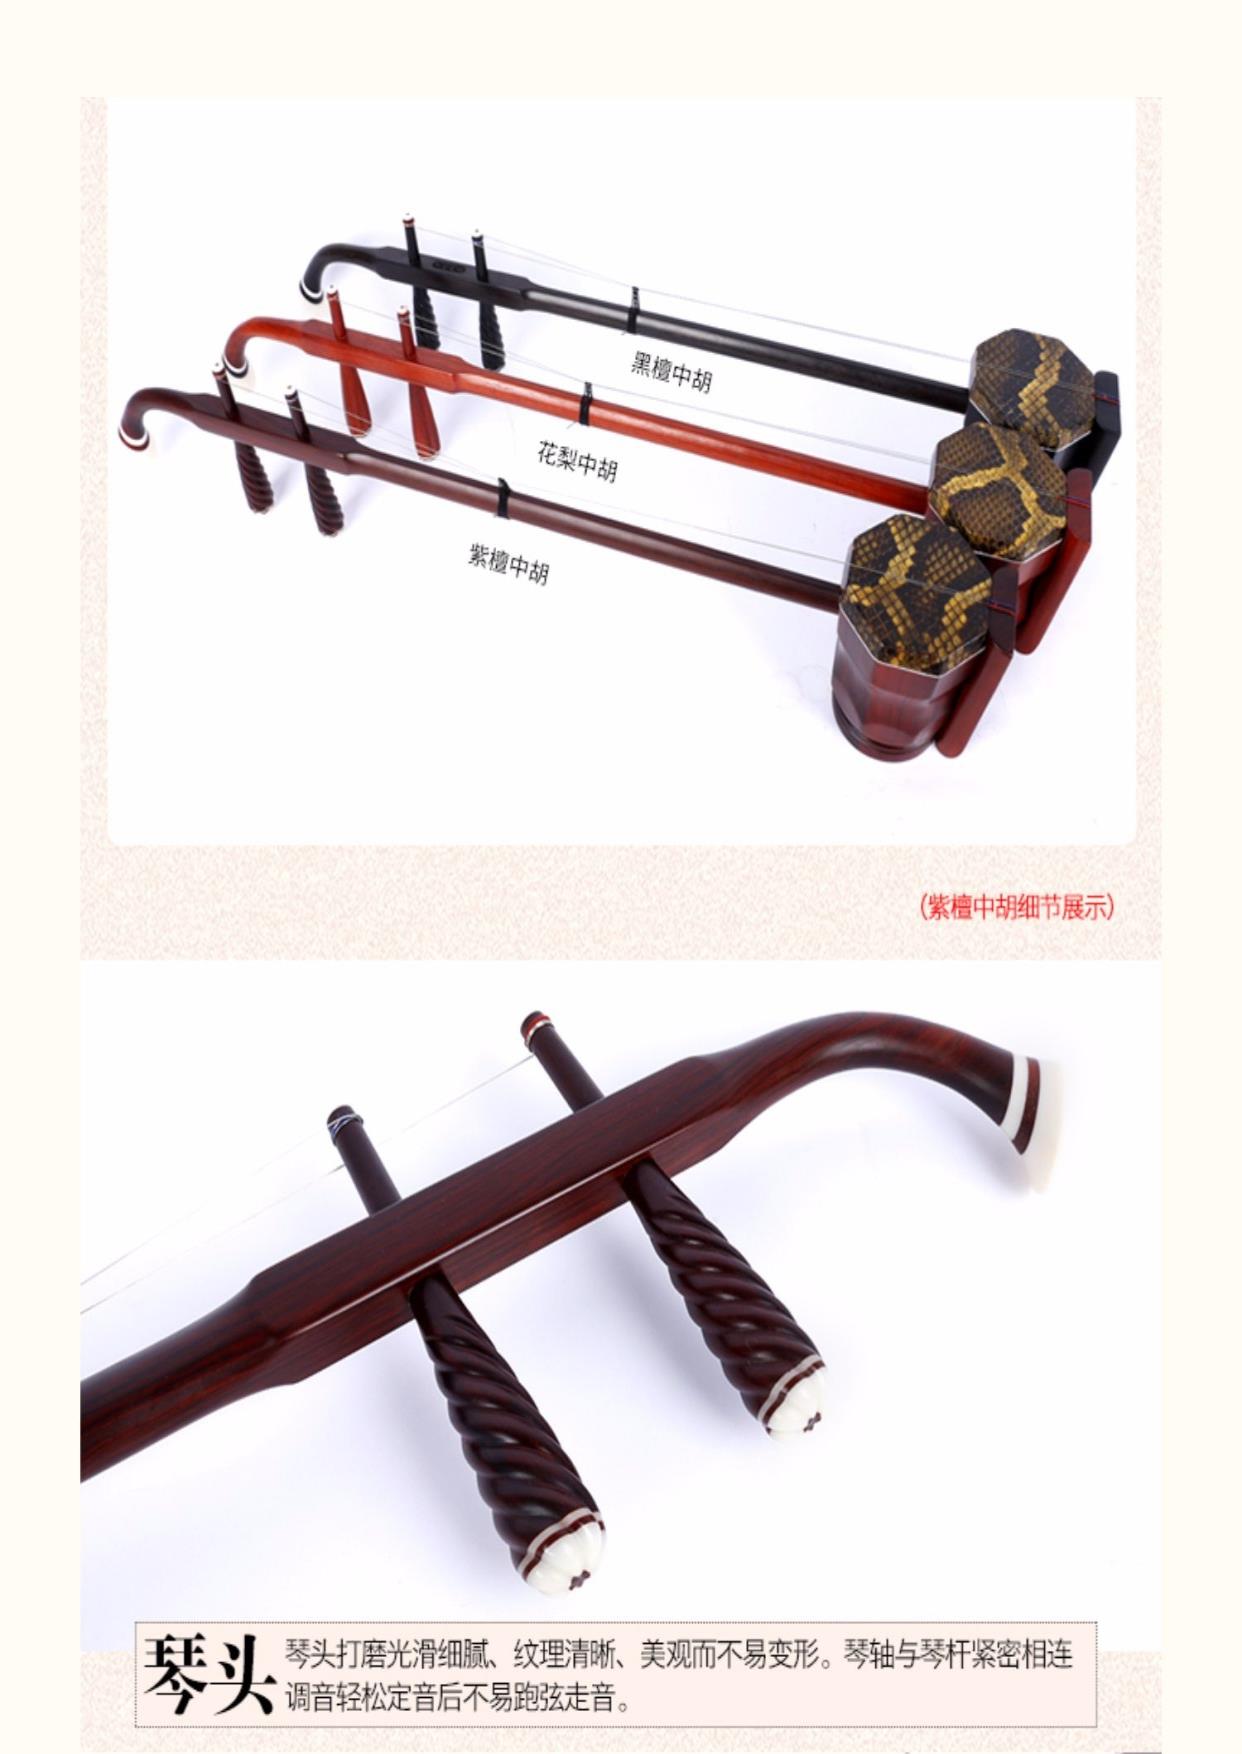 Đàn hương đen đỏ chuyên nghiệp chính hãng Zhonghu vòng tròn phía trước và sau chơi nhạc cụ Huali Alto Erhu quà tặng Zhonghu nơ hộp thông - Nhạc cụ dân tộc